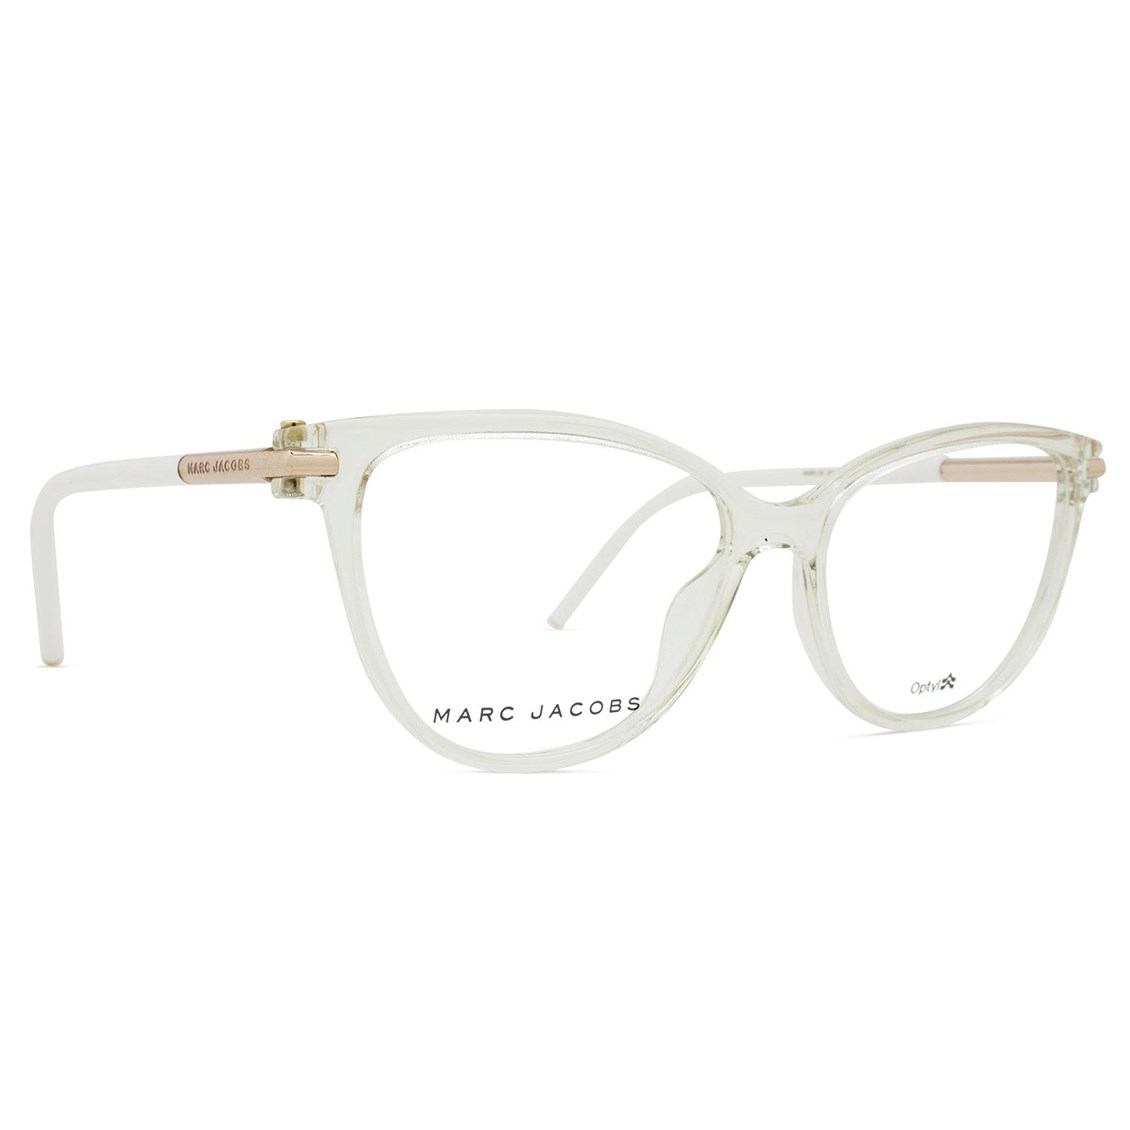 Óculos De Grau Marc Jacobs Marc 50 E02 52 Officina 7